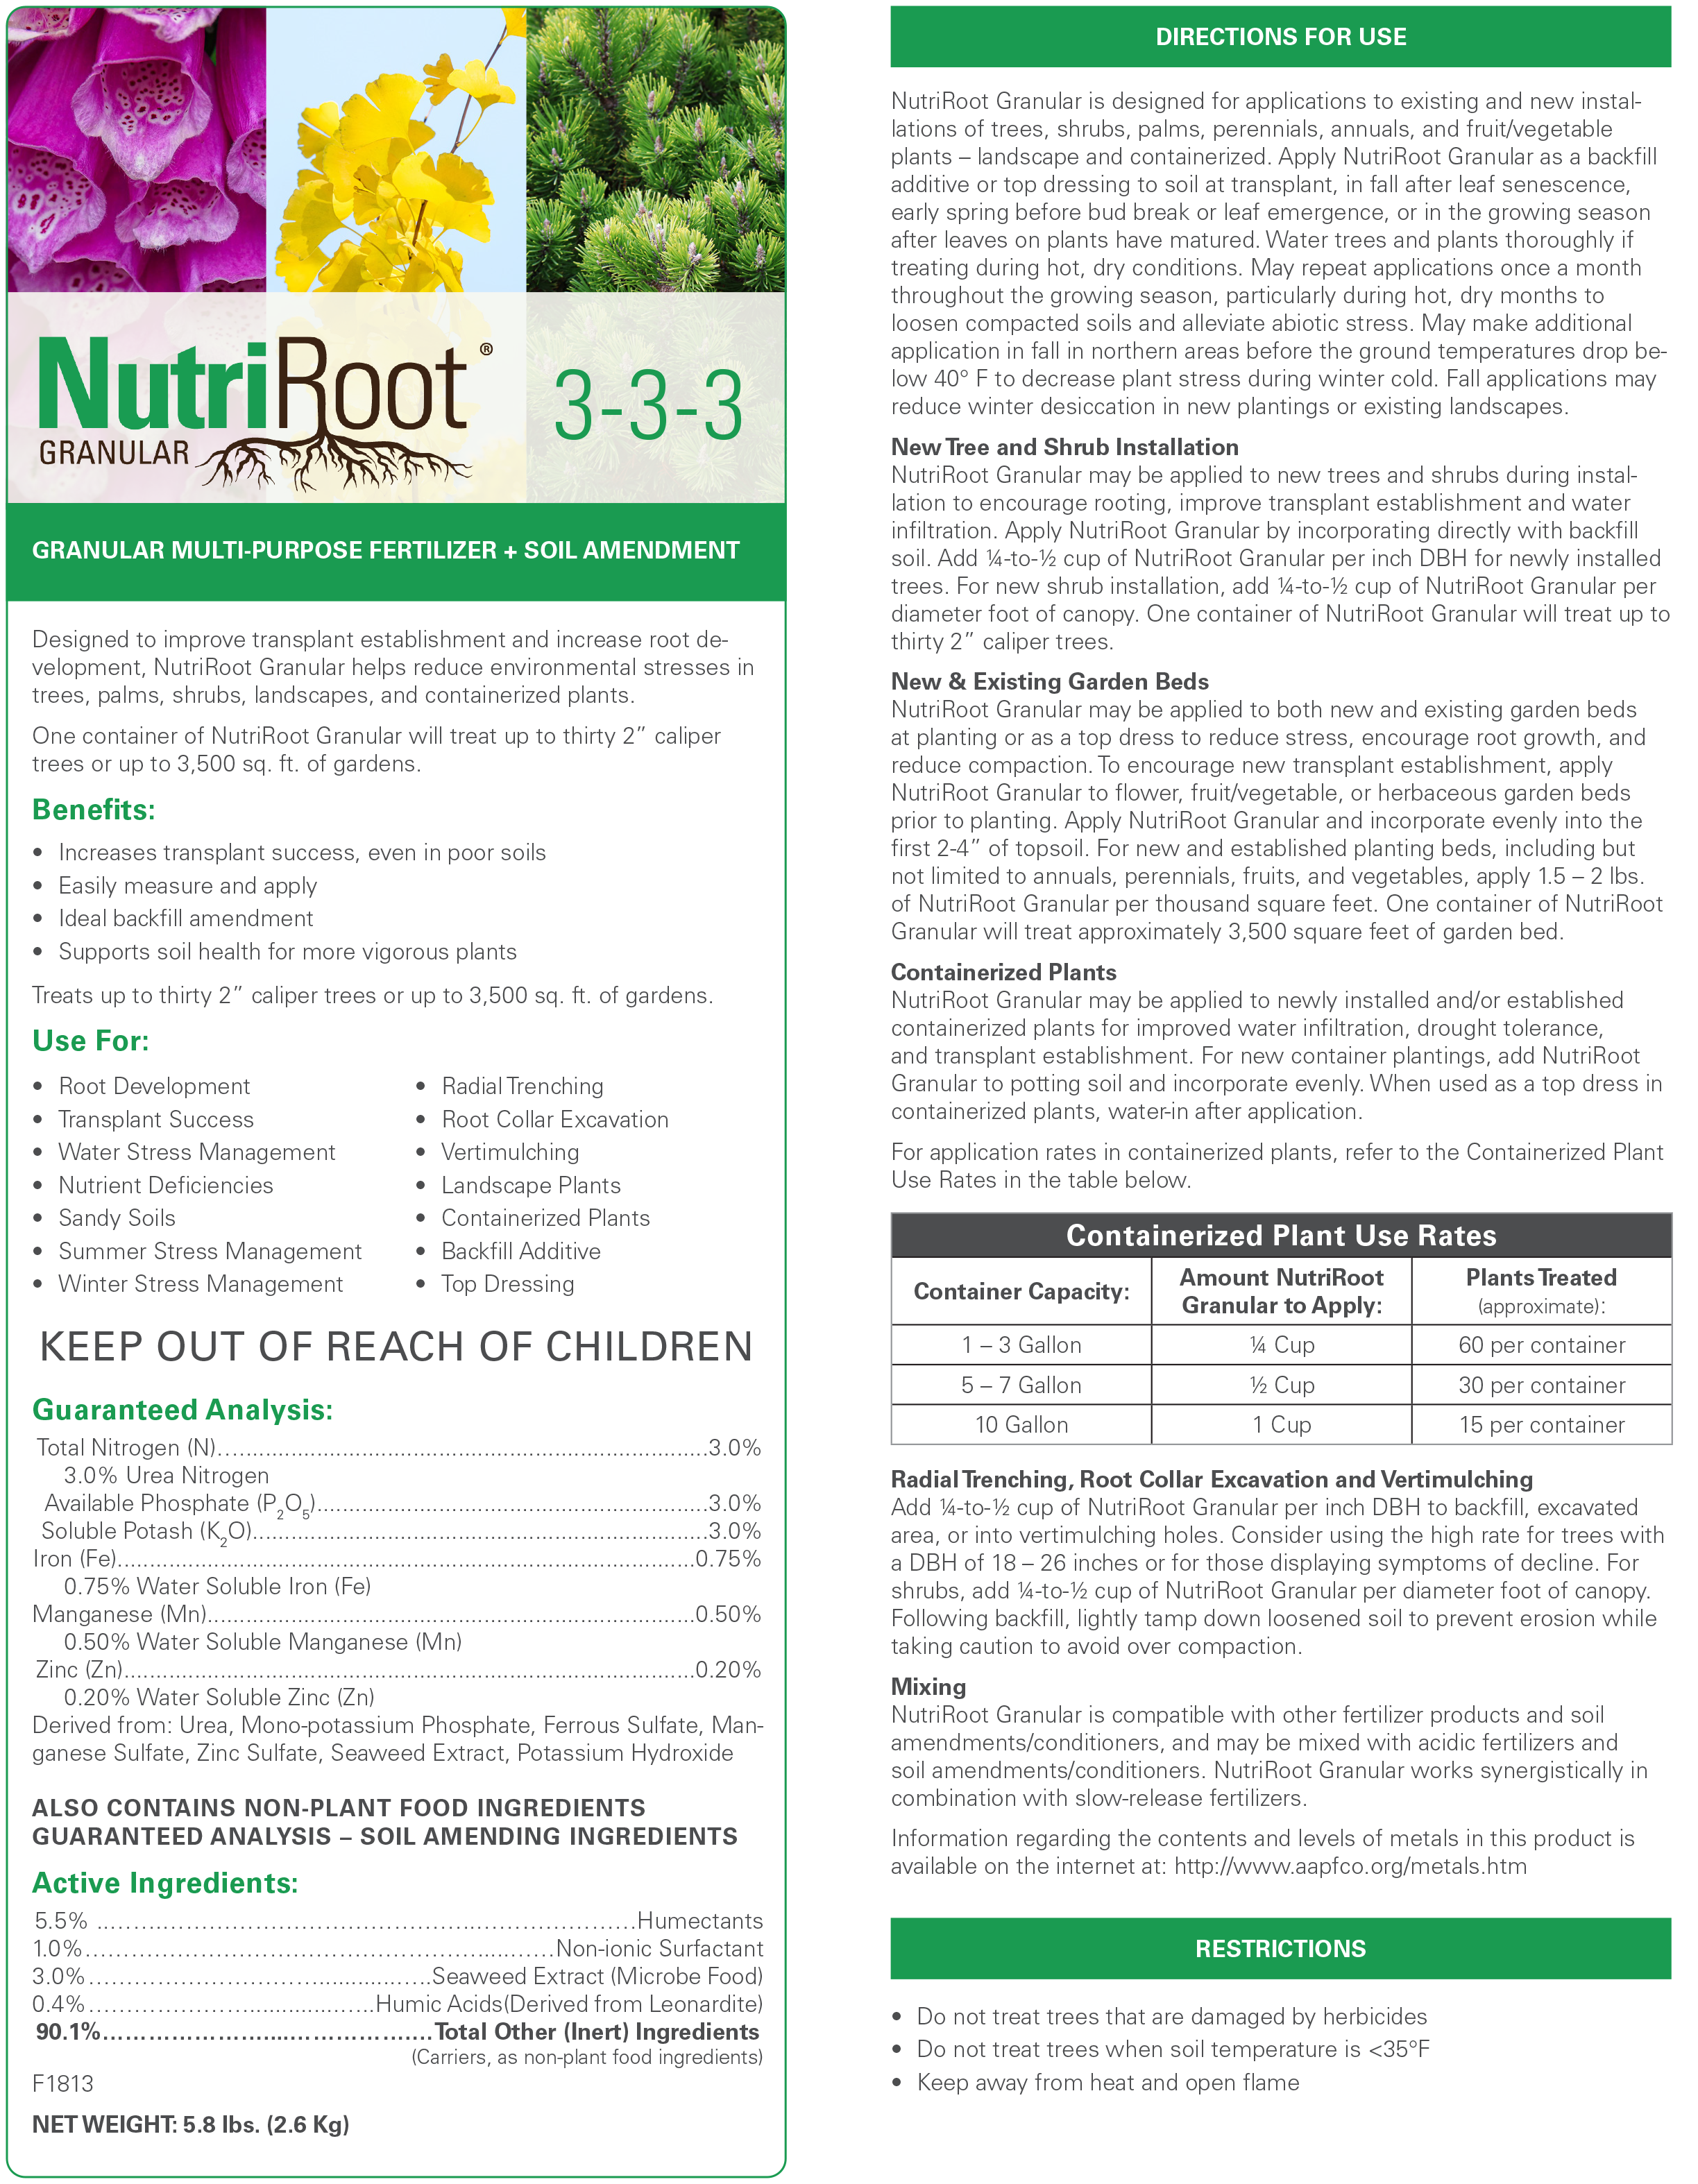 arborjet nutriroot granular 3-3-3 fertilizer instructions